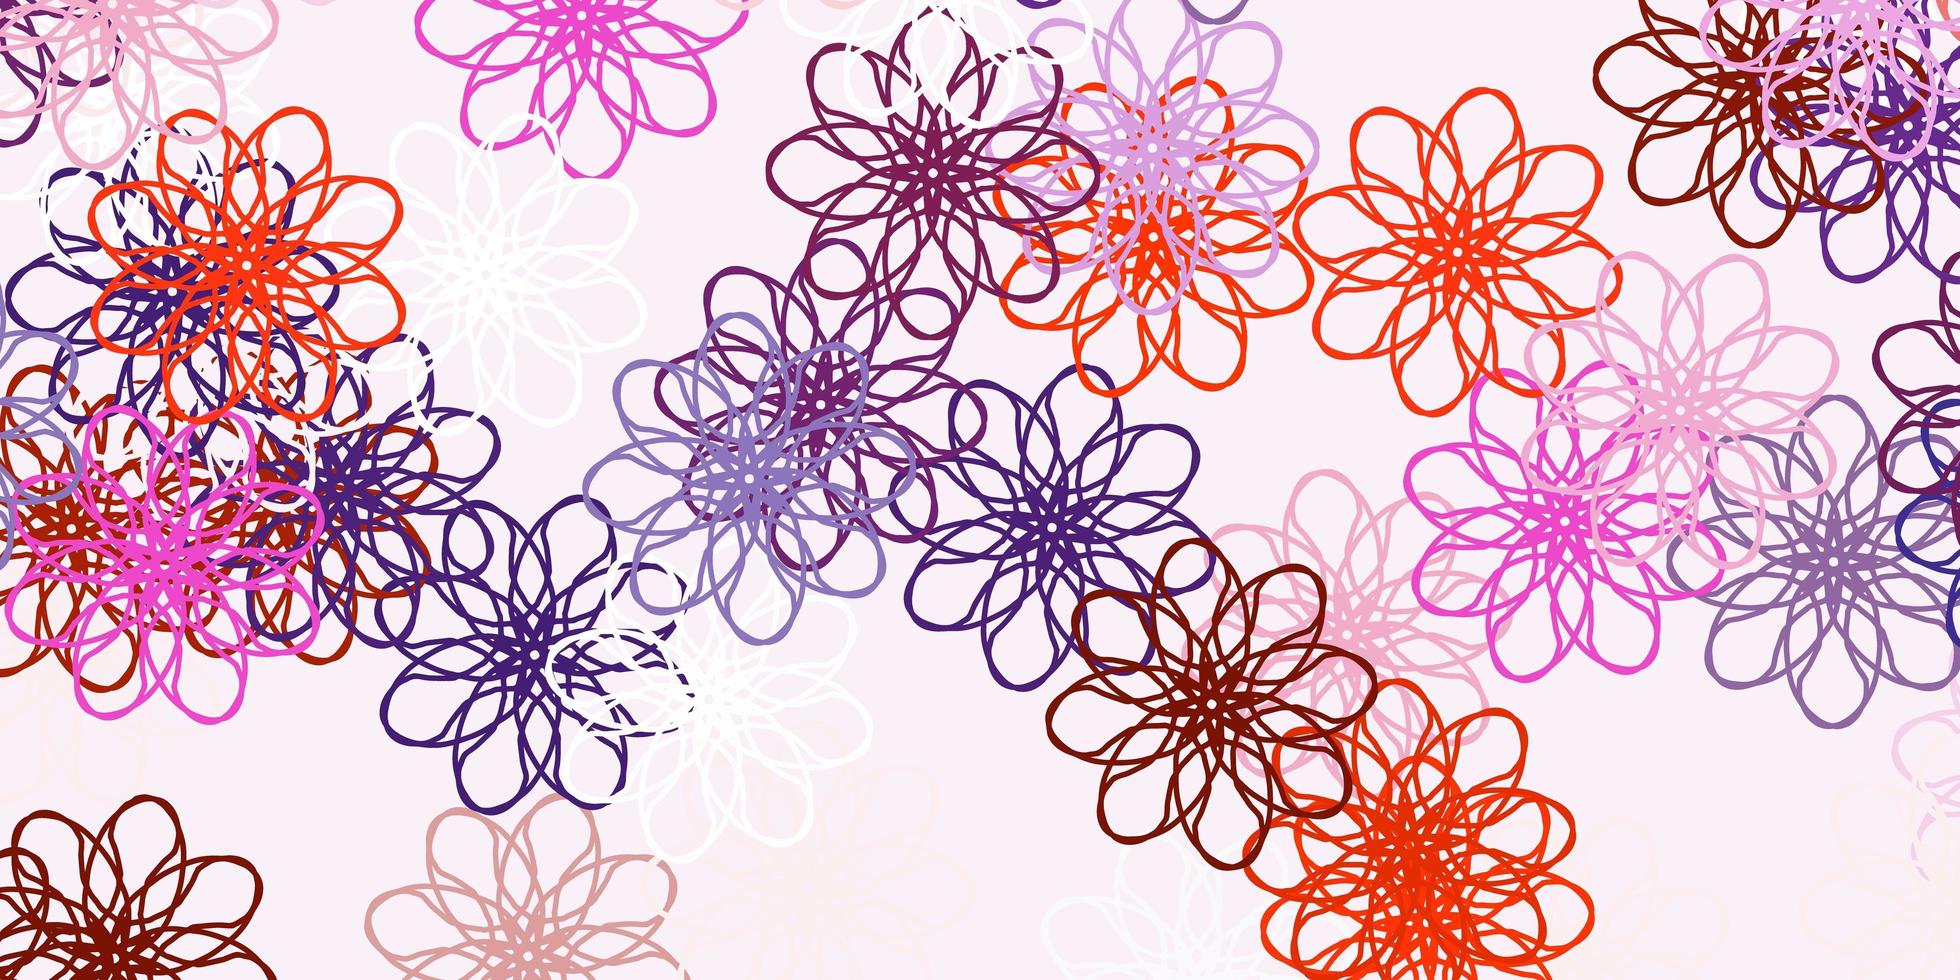 fundo do doodle do vetor rosa claro, vermelho com flores.